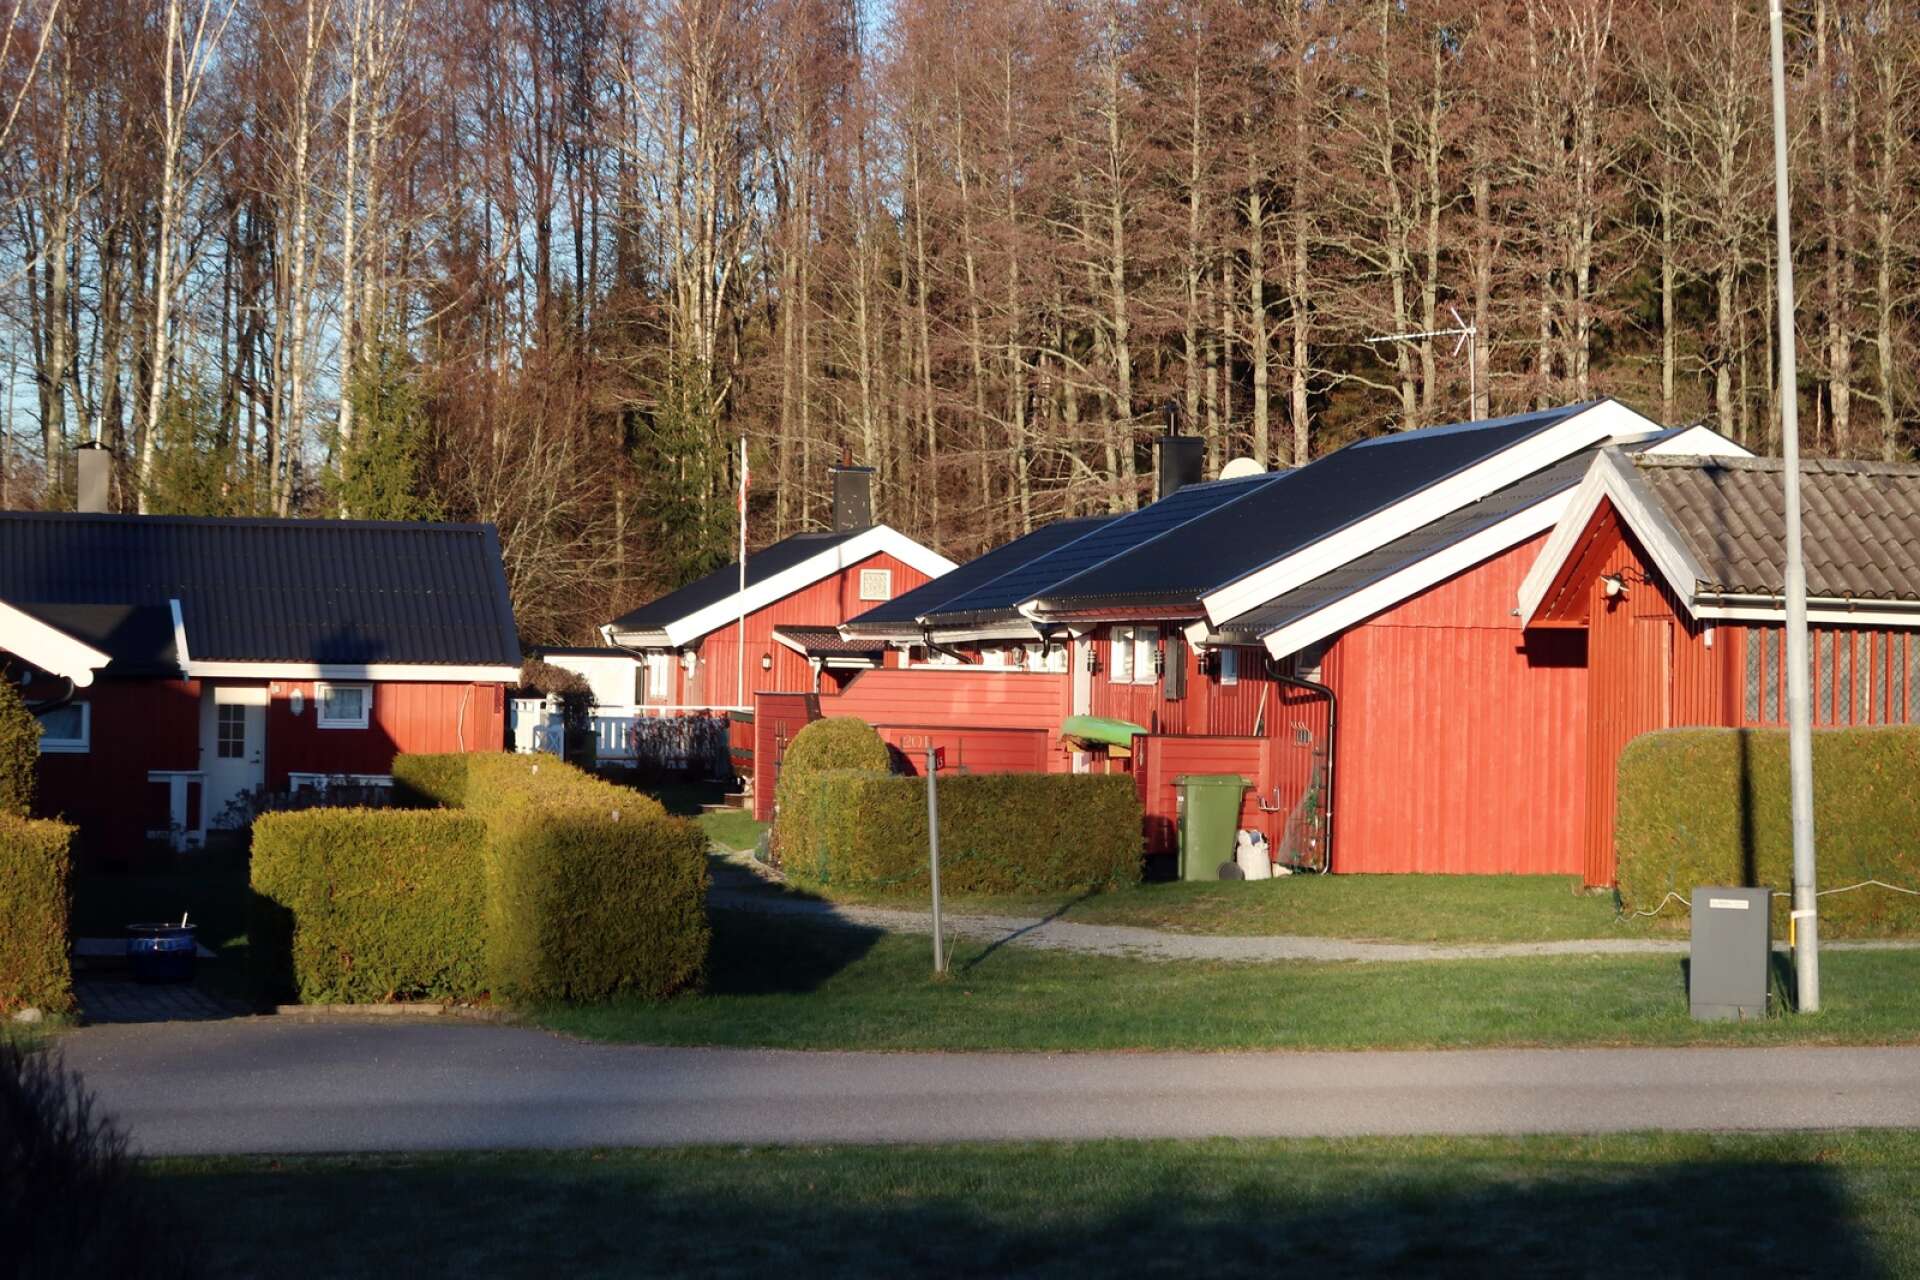 Alla hus på det nästan helt norskägda stugområdet på Furnäs är röda. Det nya huset blir inget undantag.